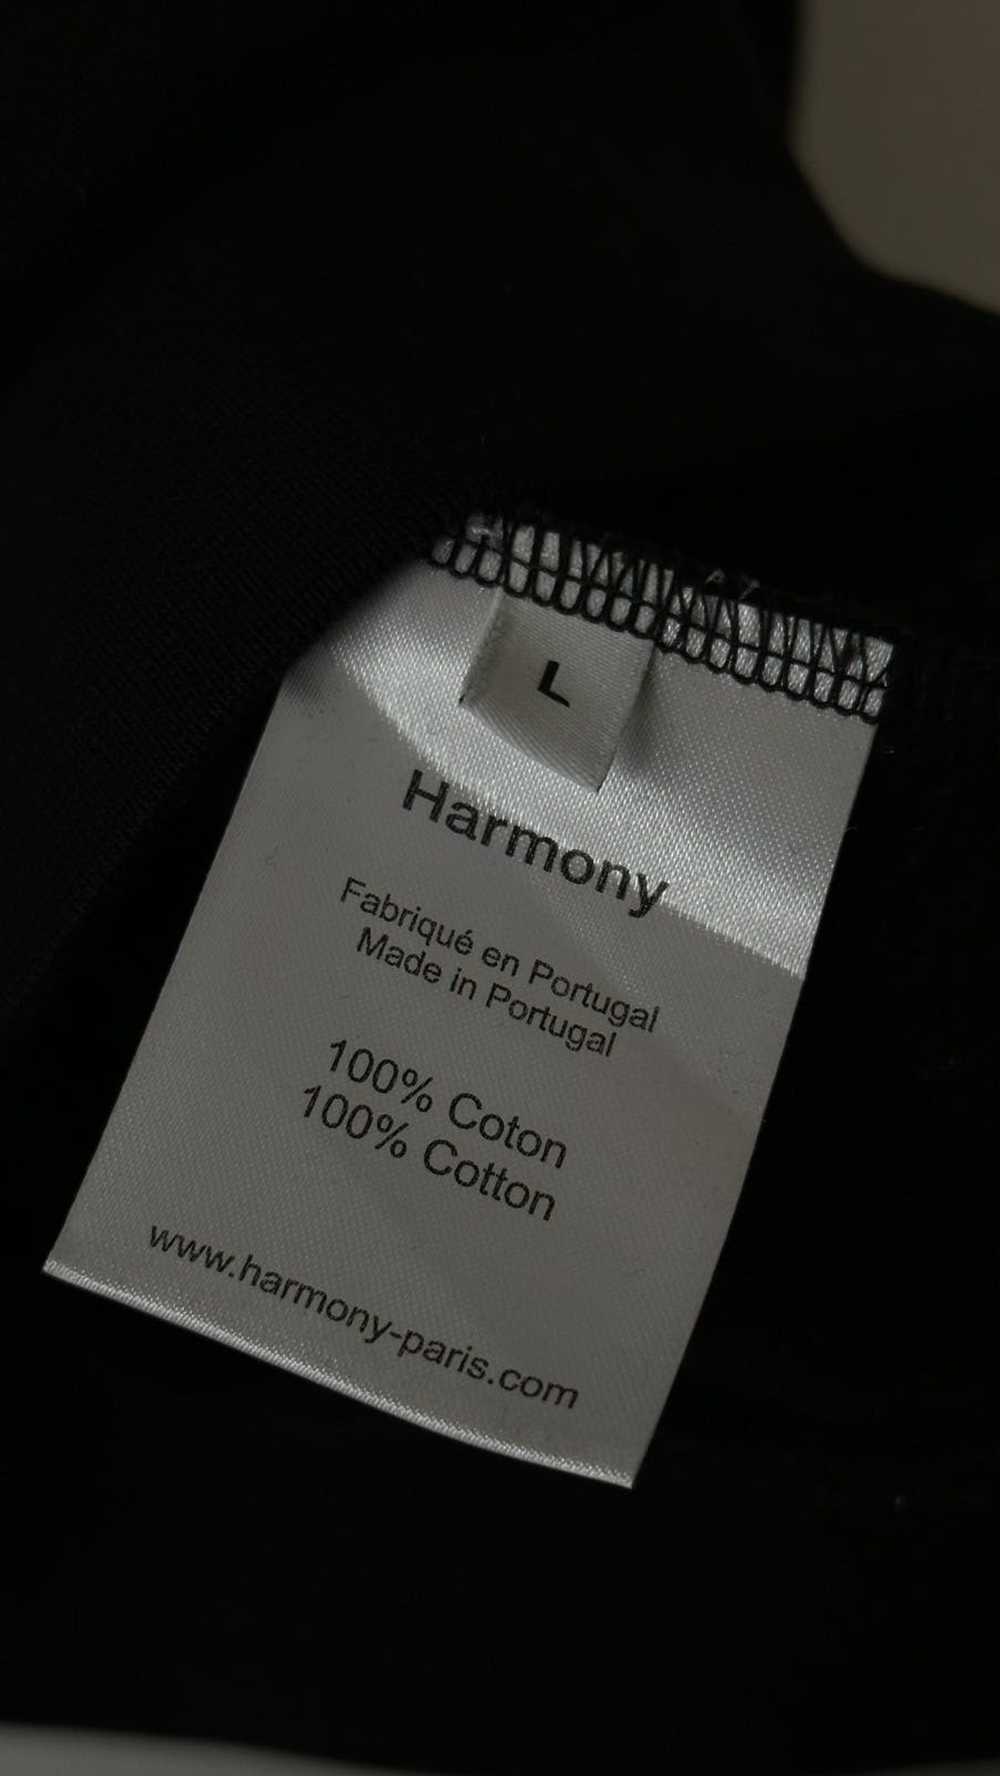 Harmony Paris Harmony Sofian - image 4